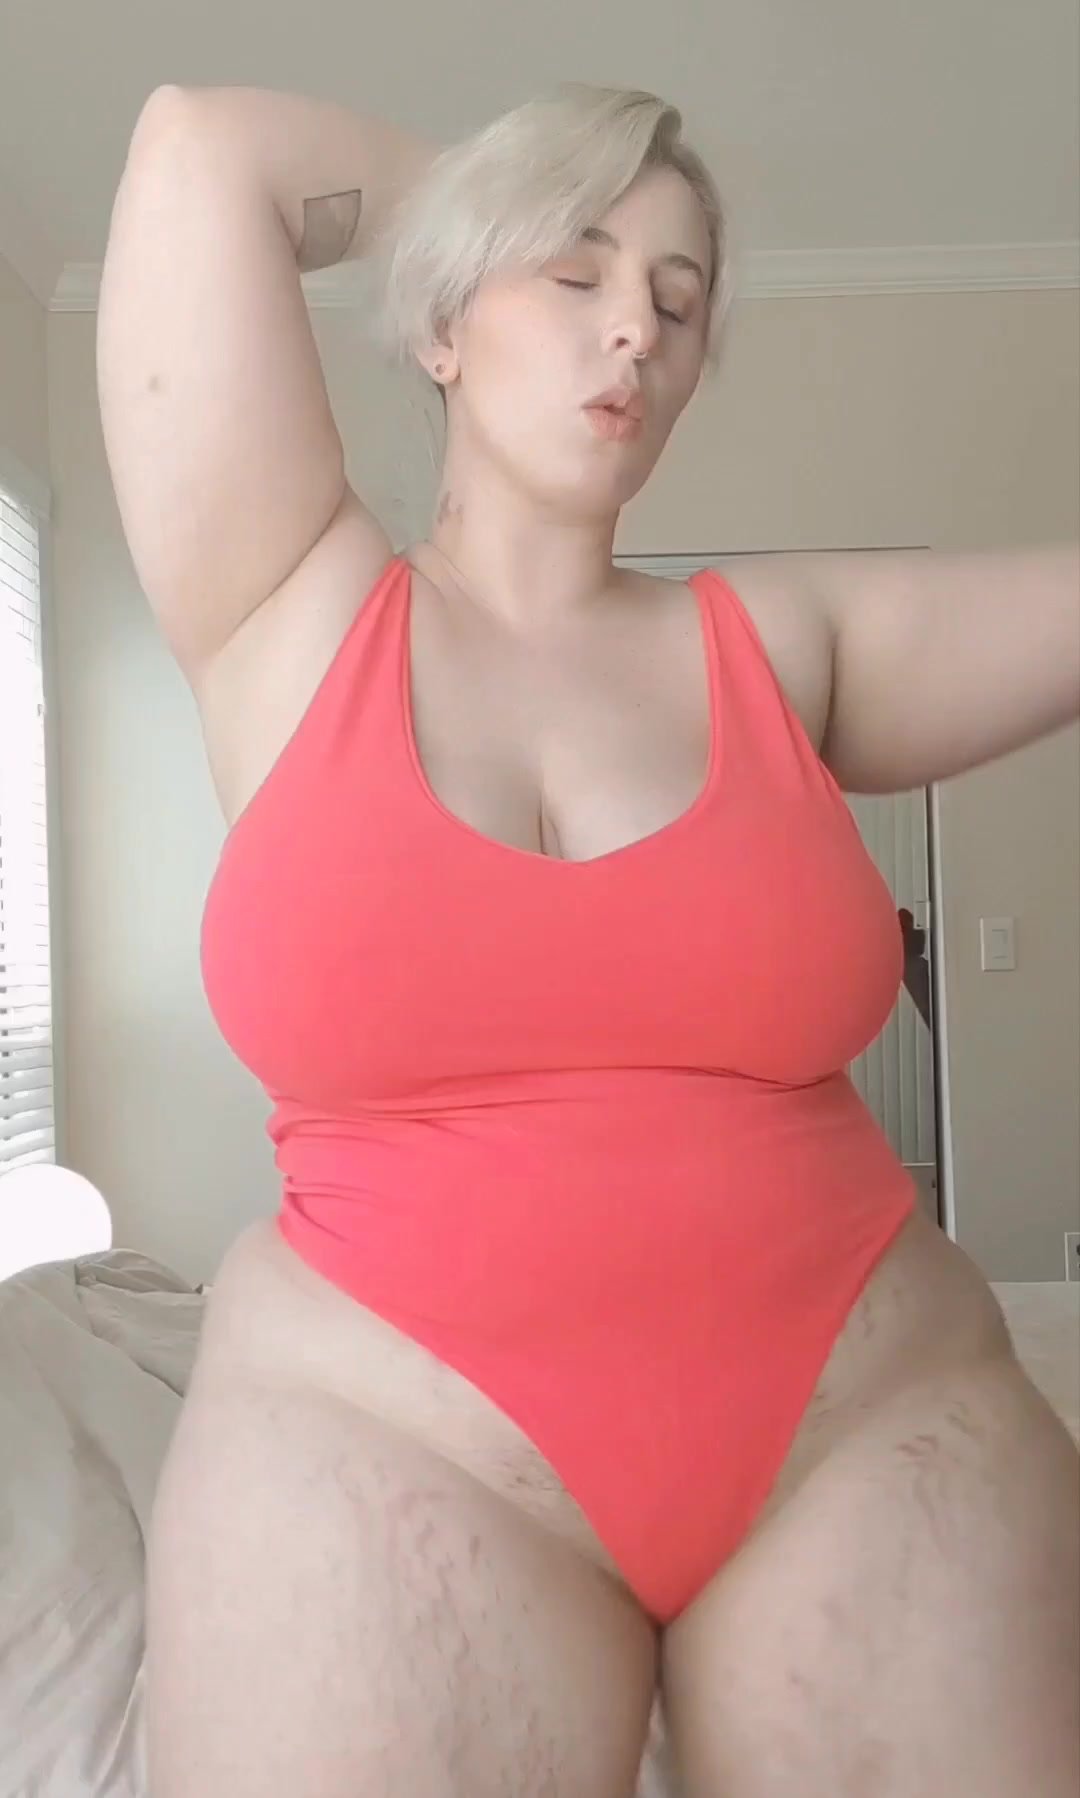 1080px x 1798px - Sexy chubby slut - video 2 - ThisVid.com